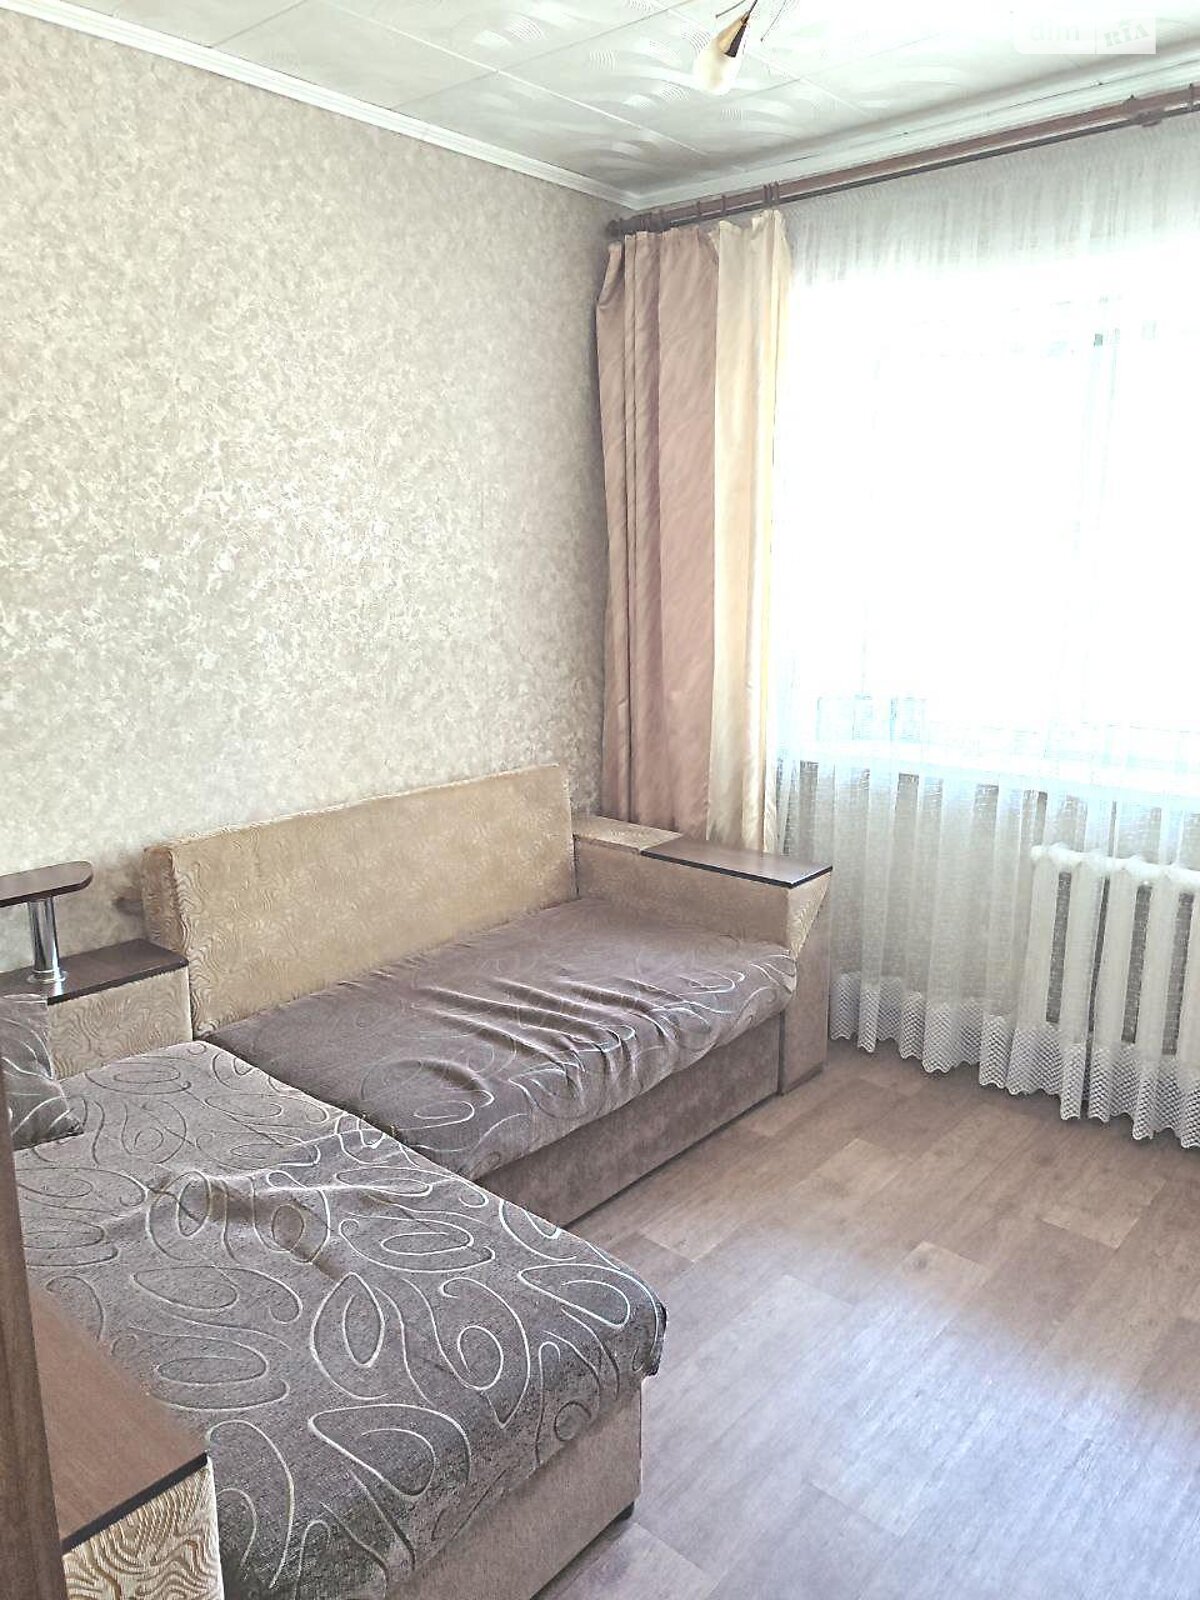 Кімната в Харкові на вул. Шекспіра 13 в районі Павлове Поле на продаж фото 1